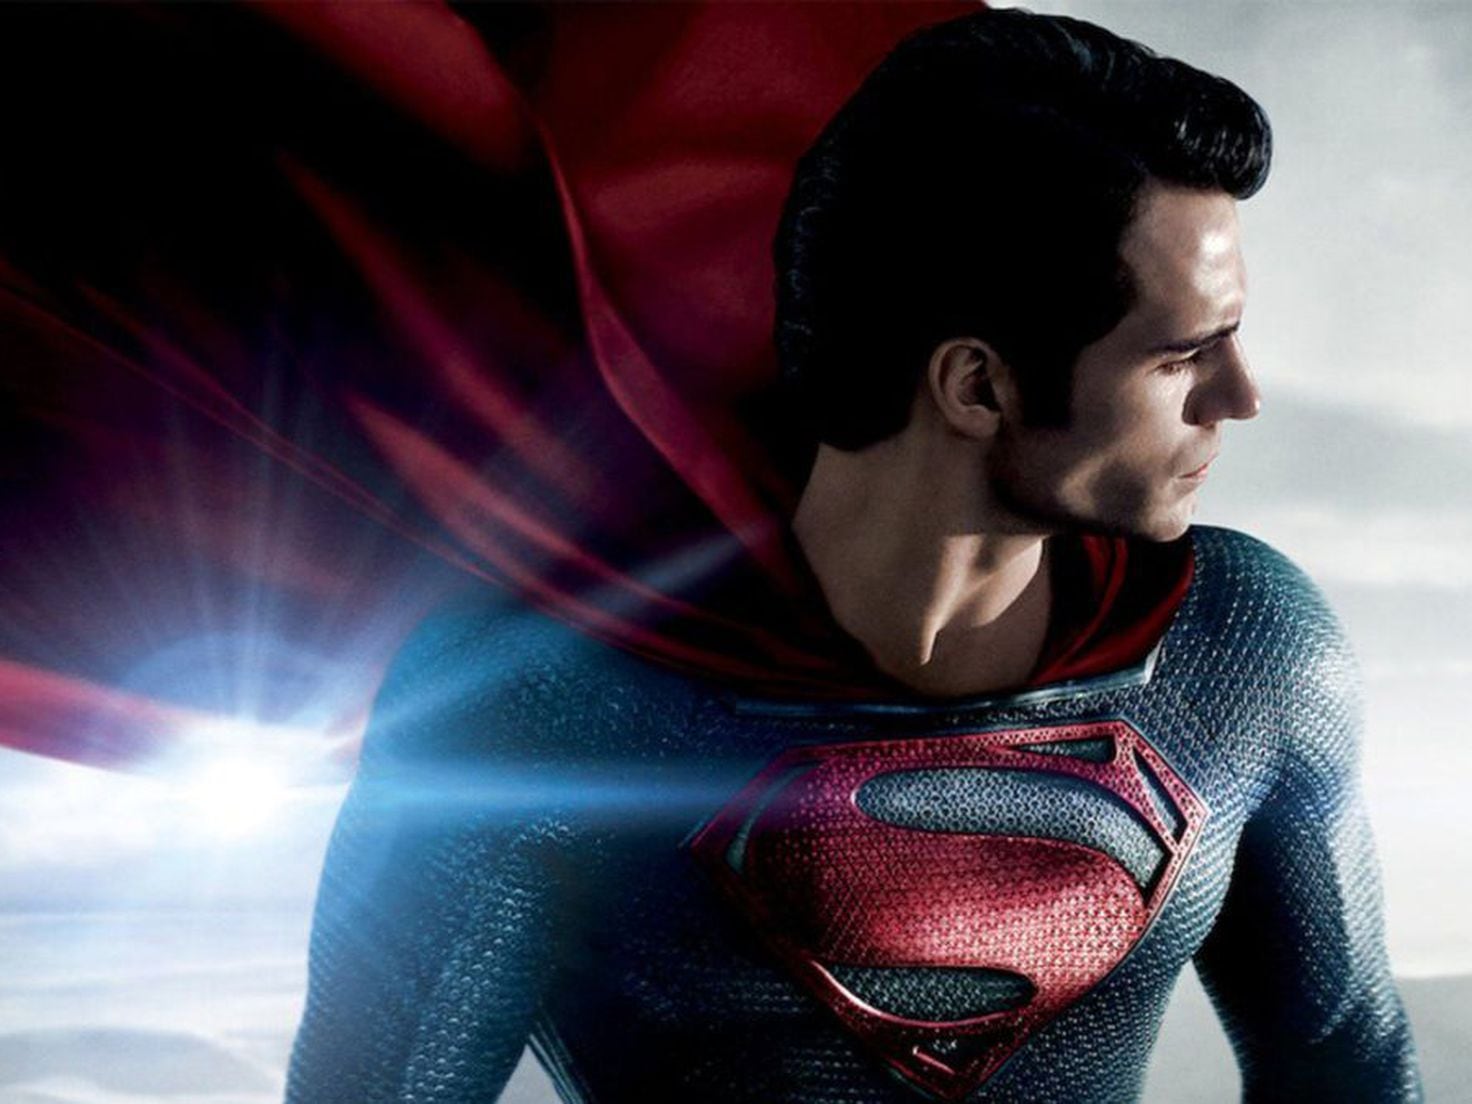 Henry Cavill responde sobre novo filme do Superman